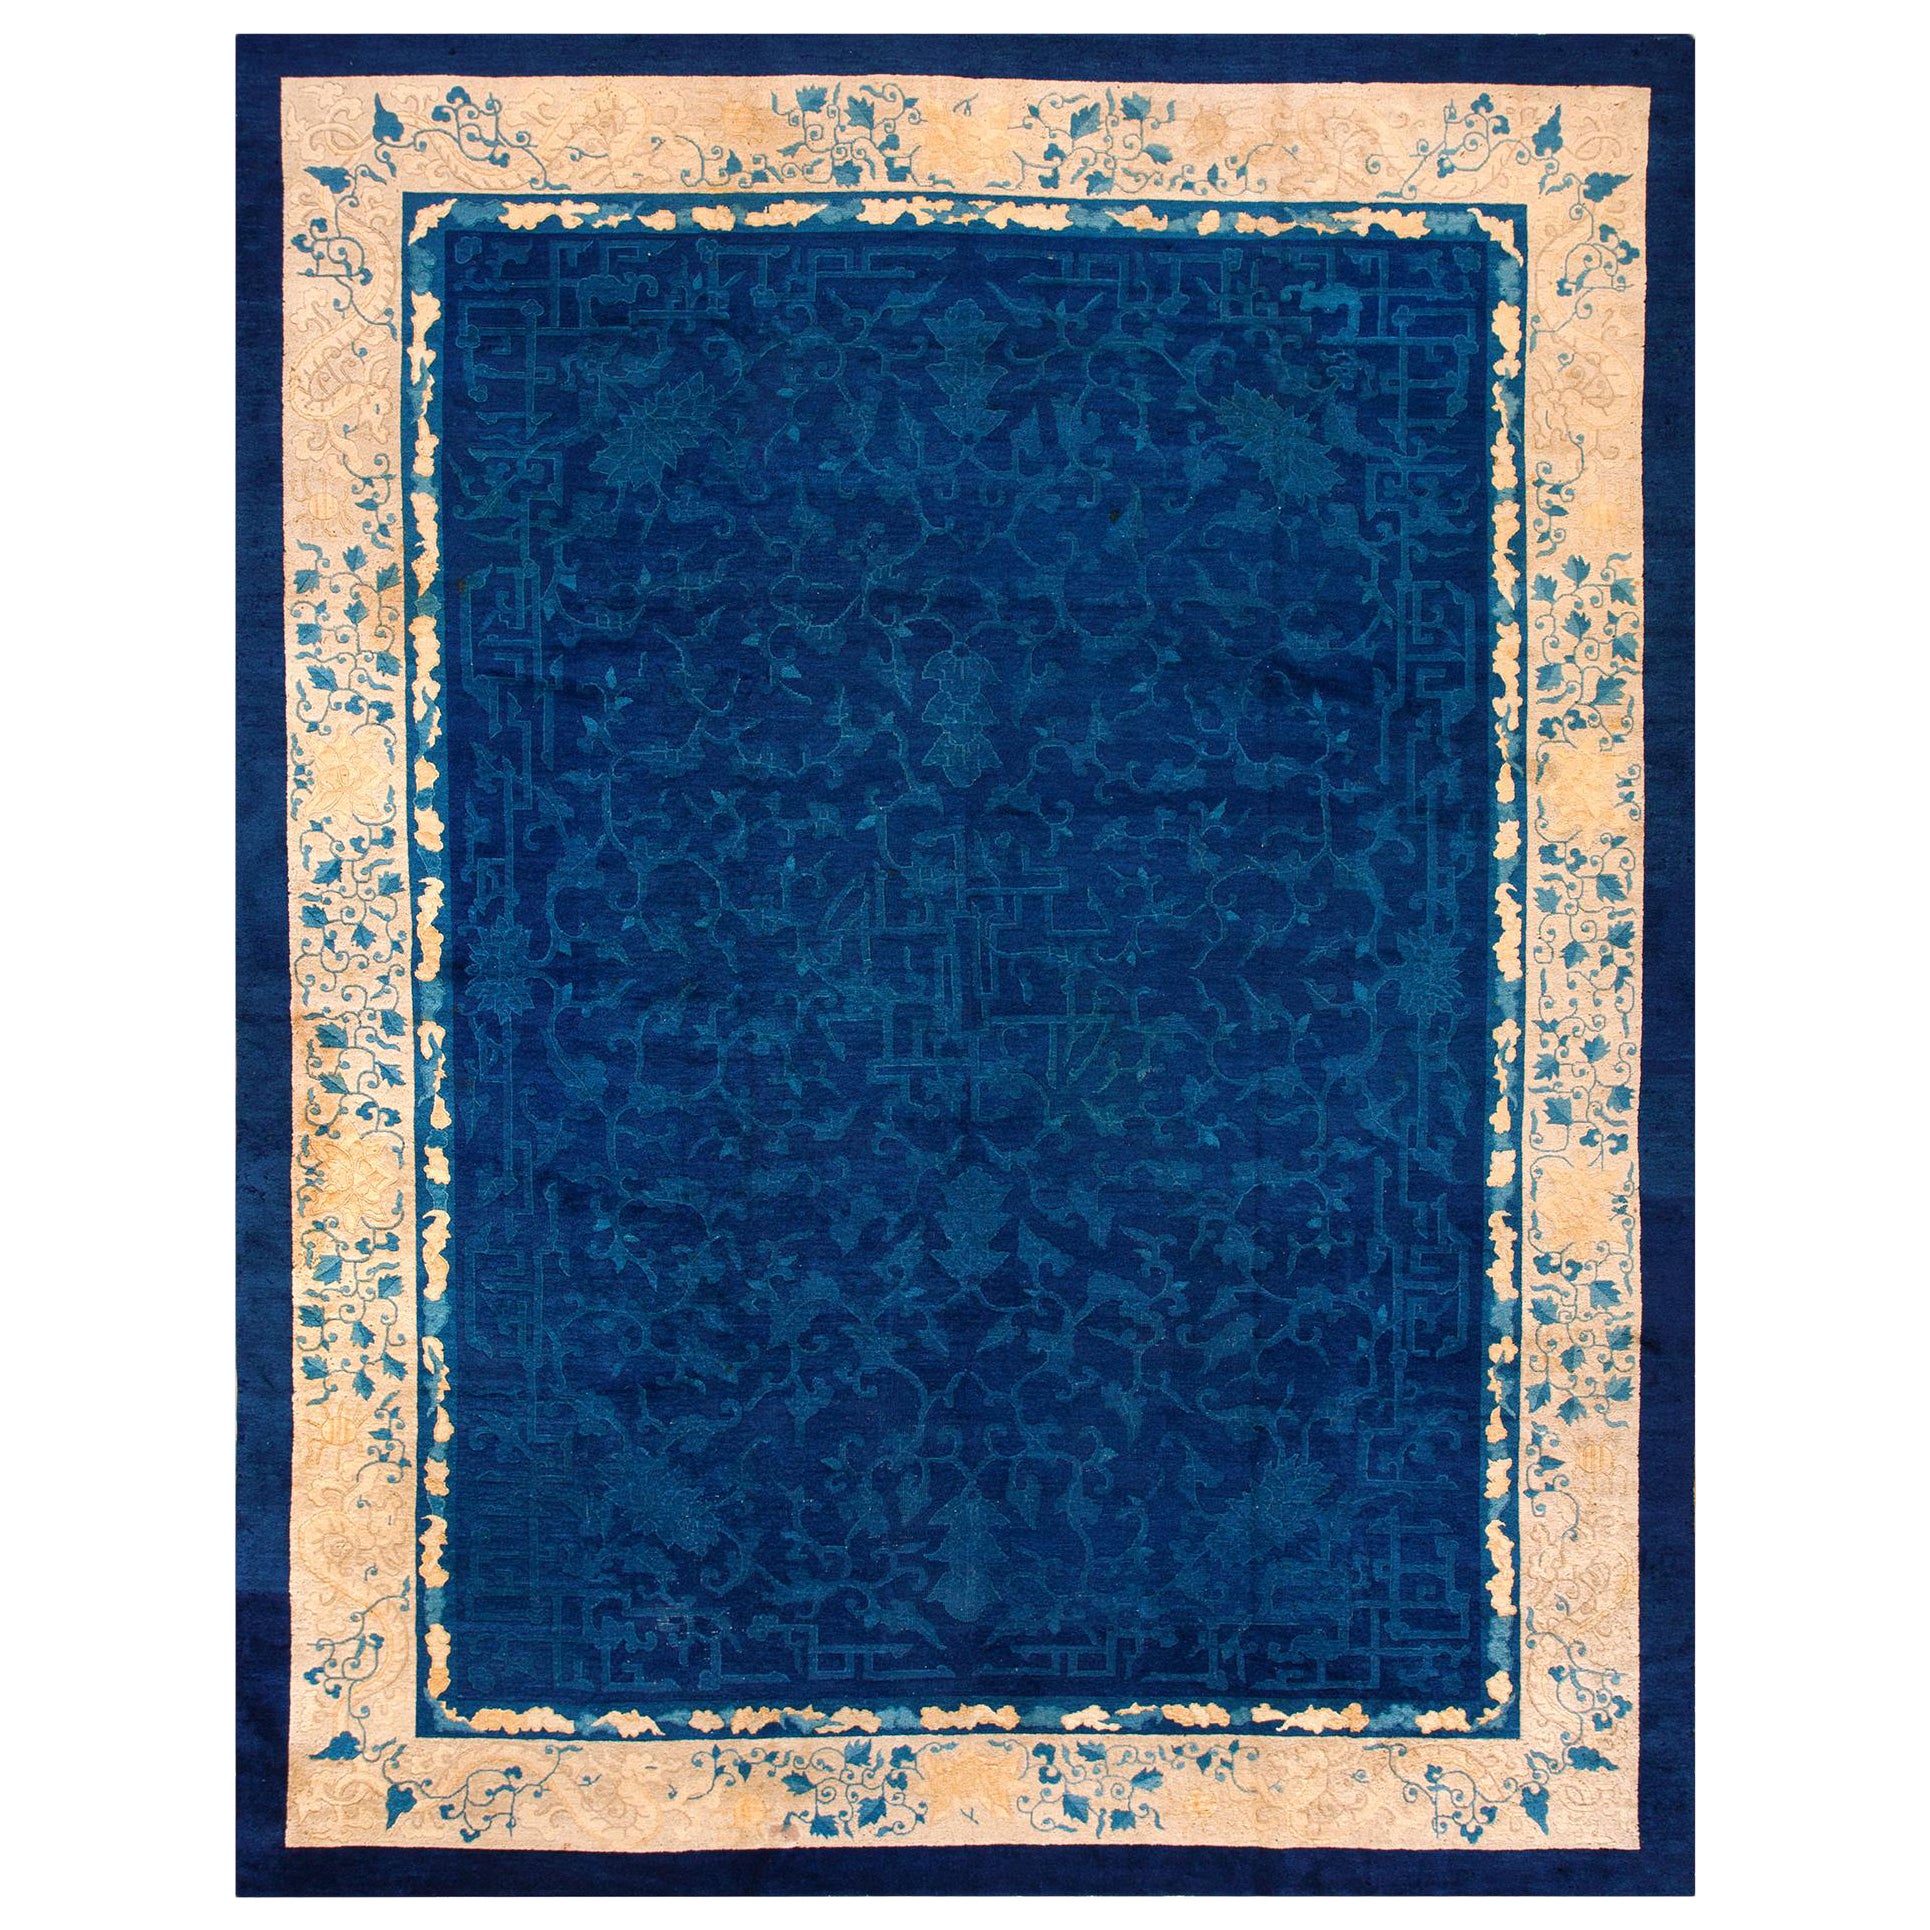 Chinesischer Peking-Teppich des frühen 20. Jahrhunderts (9' x 11'9" - 274 x 358)